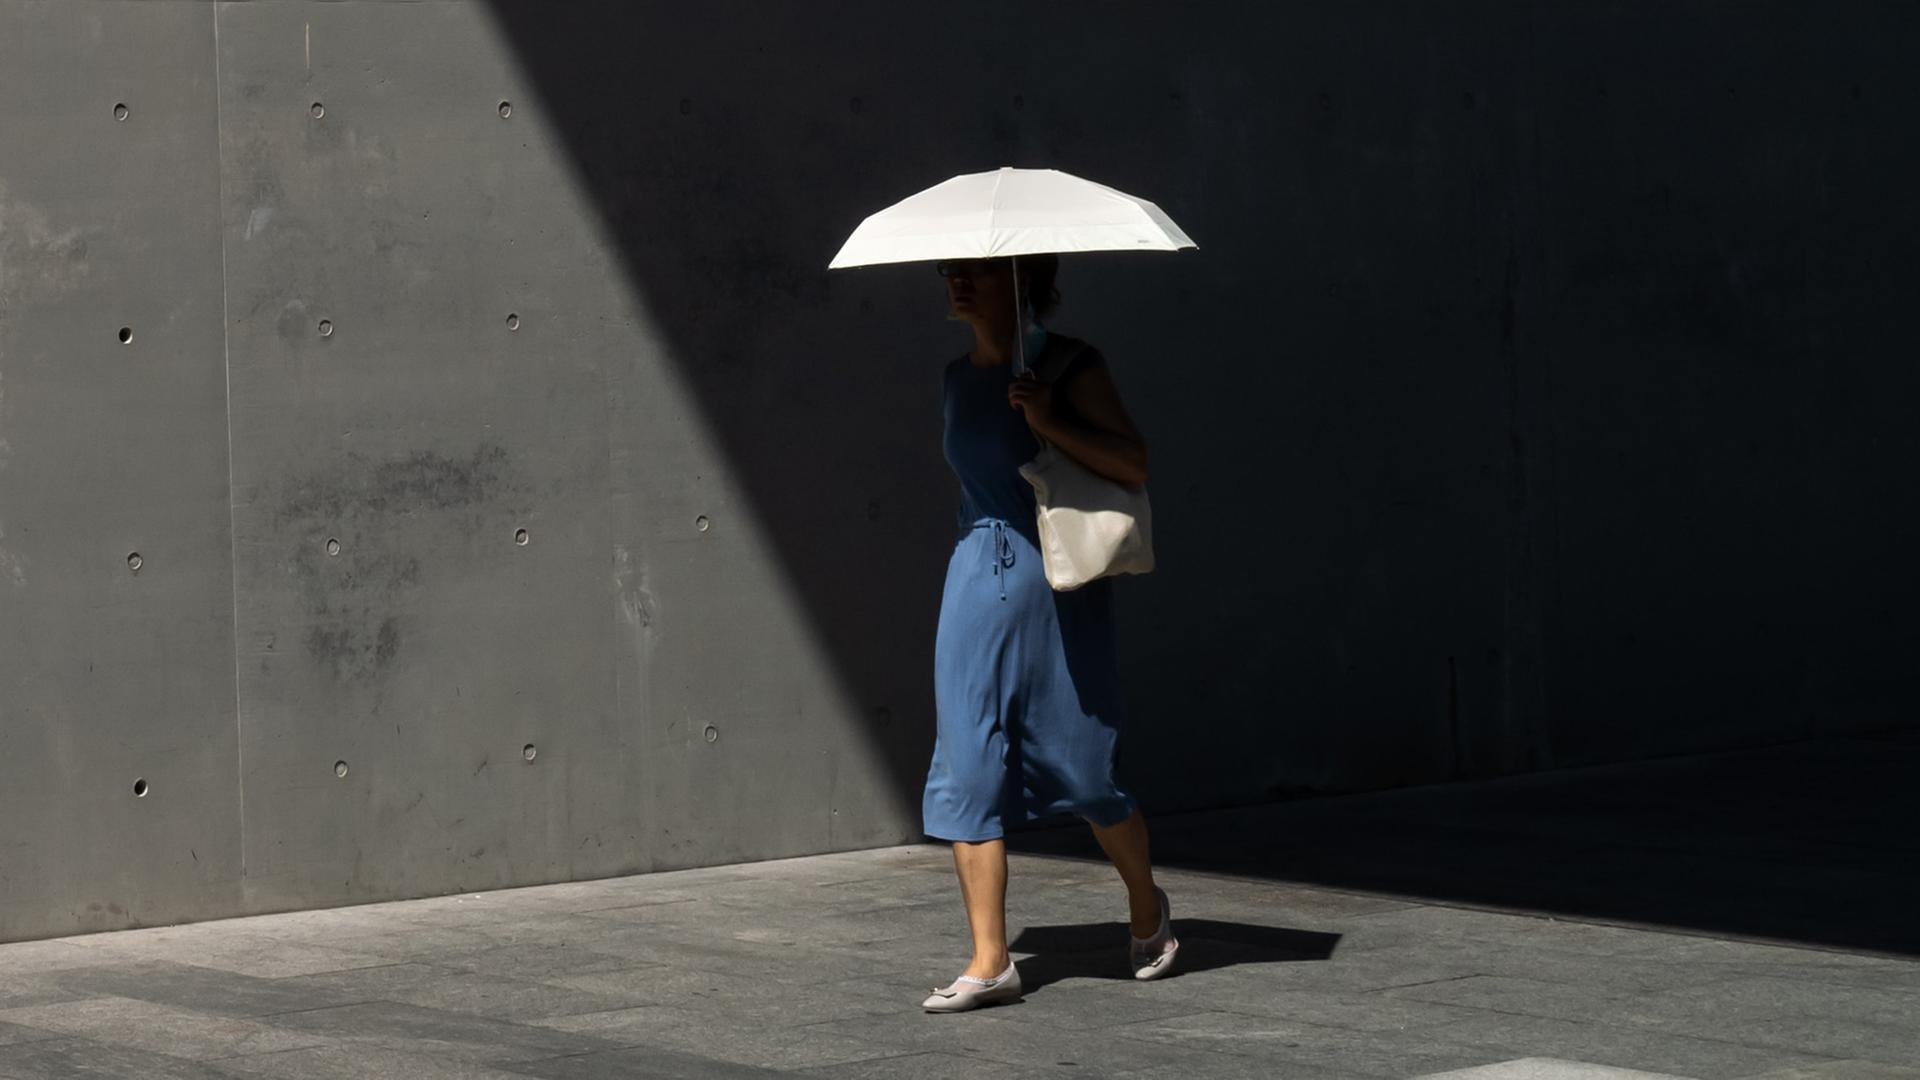 Frau im blauen Kleid, mit weißer Umhängetasche und weißen Schuhen trägt eine weißen Schirm. Sie läuft aus dem Schatten heraus in die Sonne. Gehweg und Tunnelwand sind trist und grau. Ihr Oberkörper ist durch Schatten kaum zu erkennen.